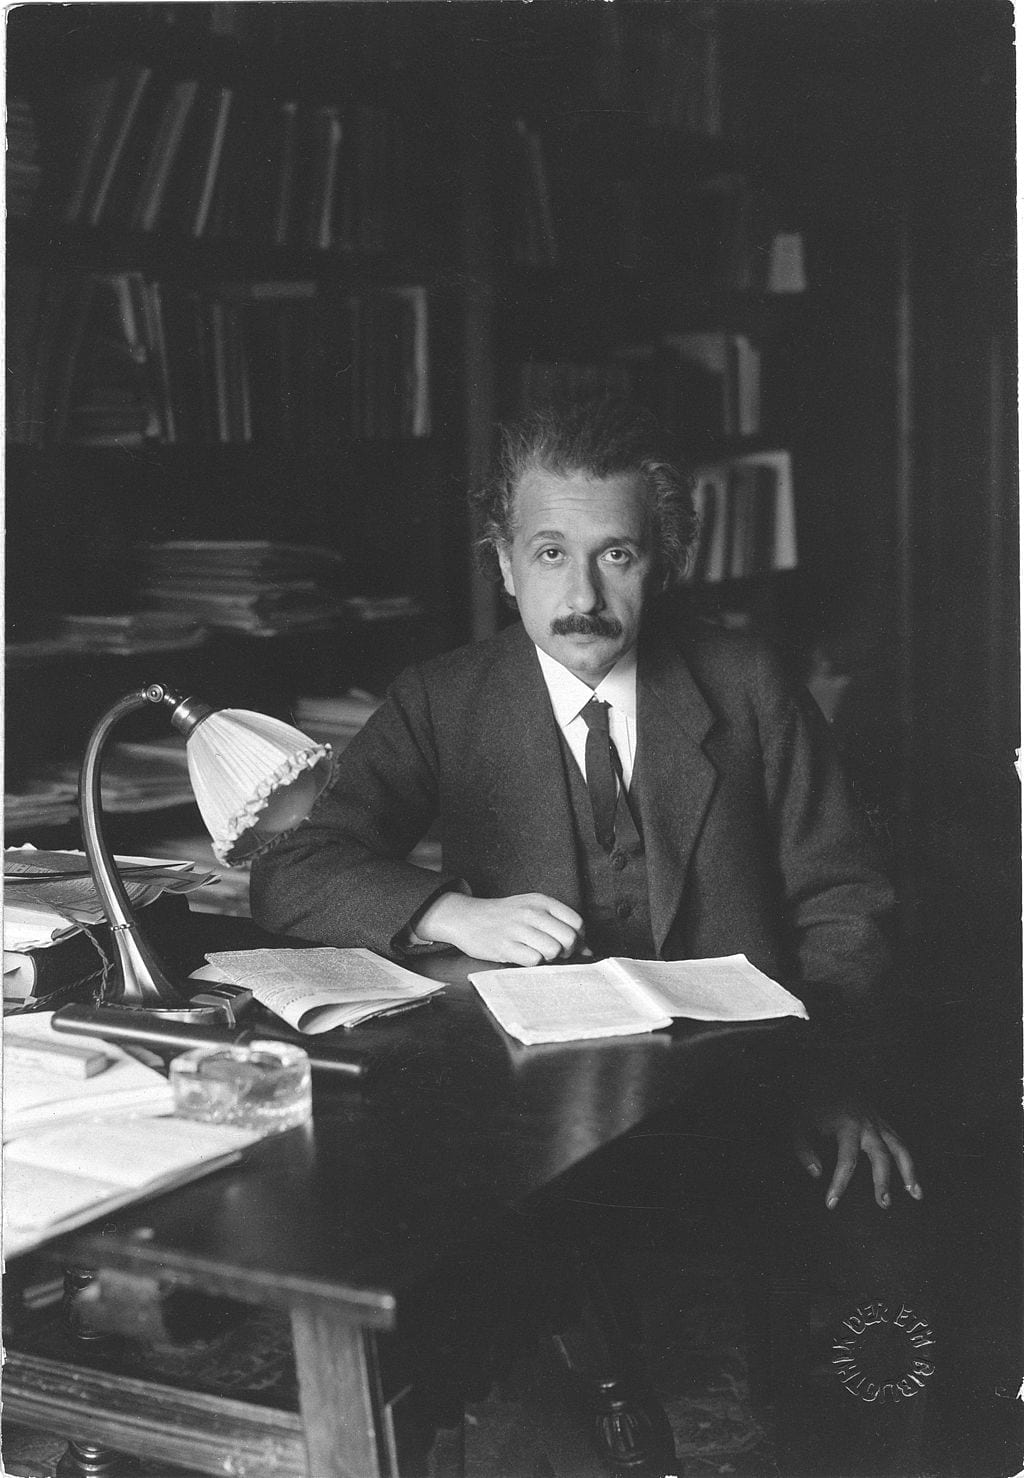 Albert Einstein in his office